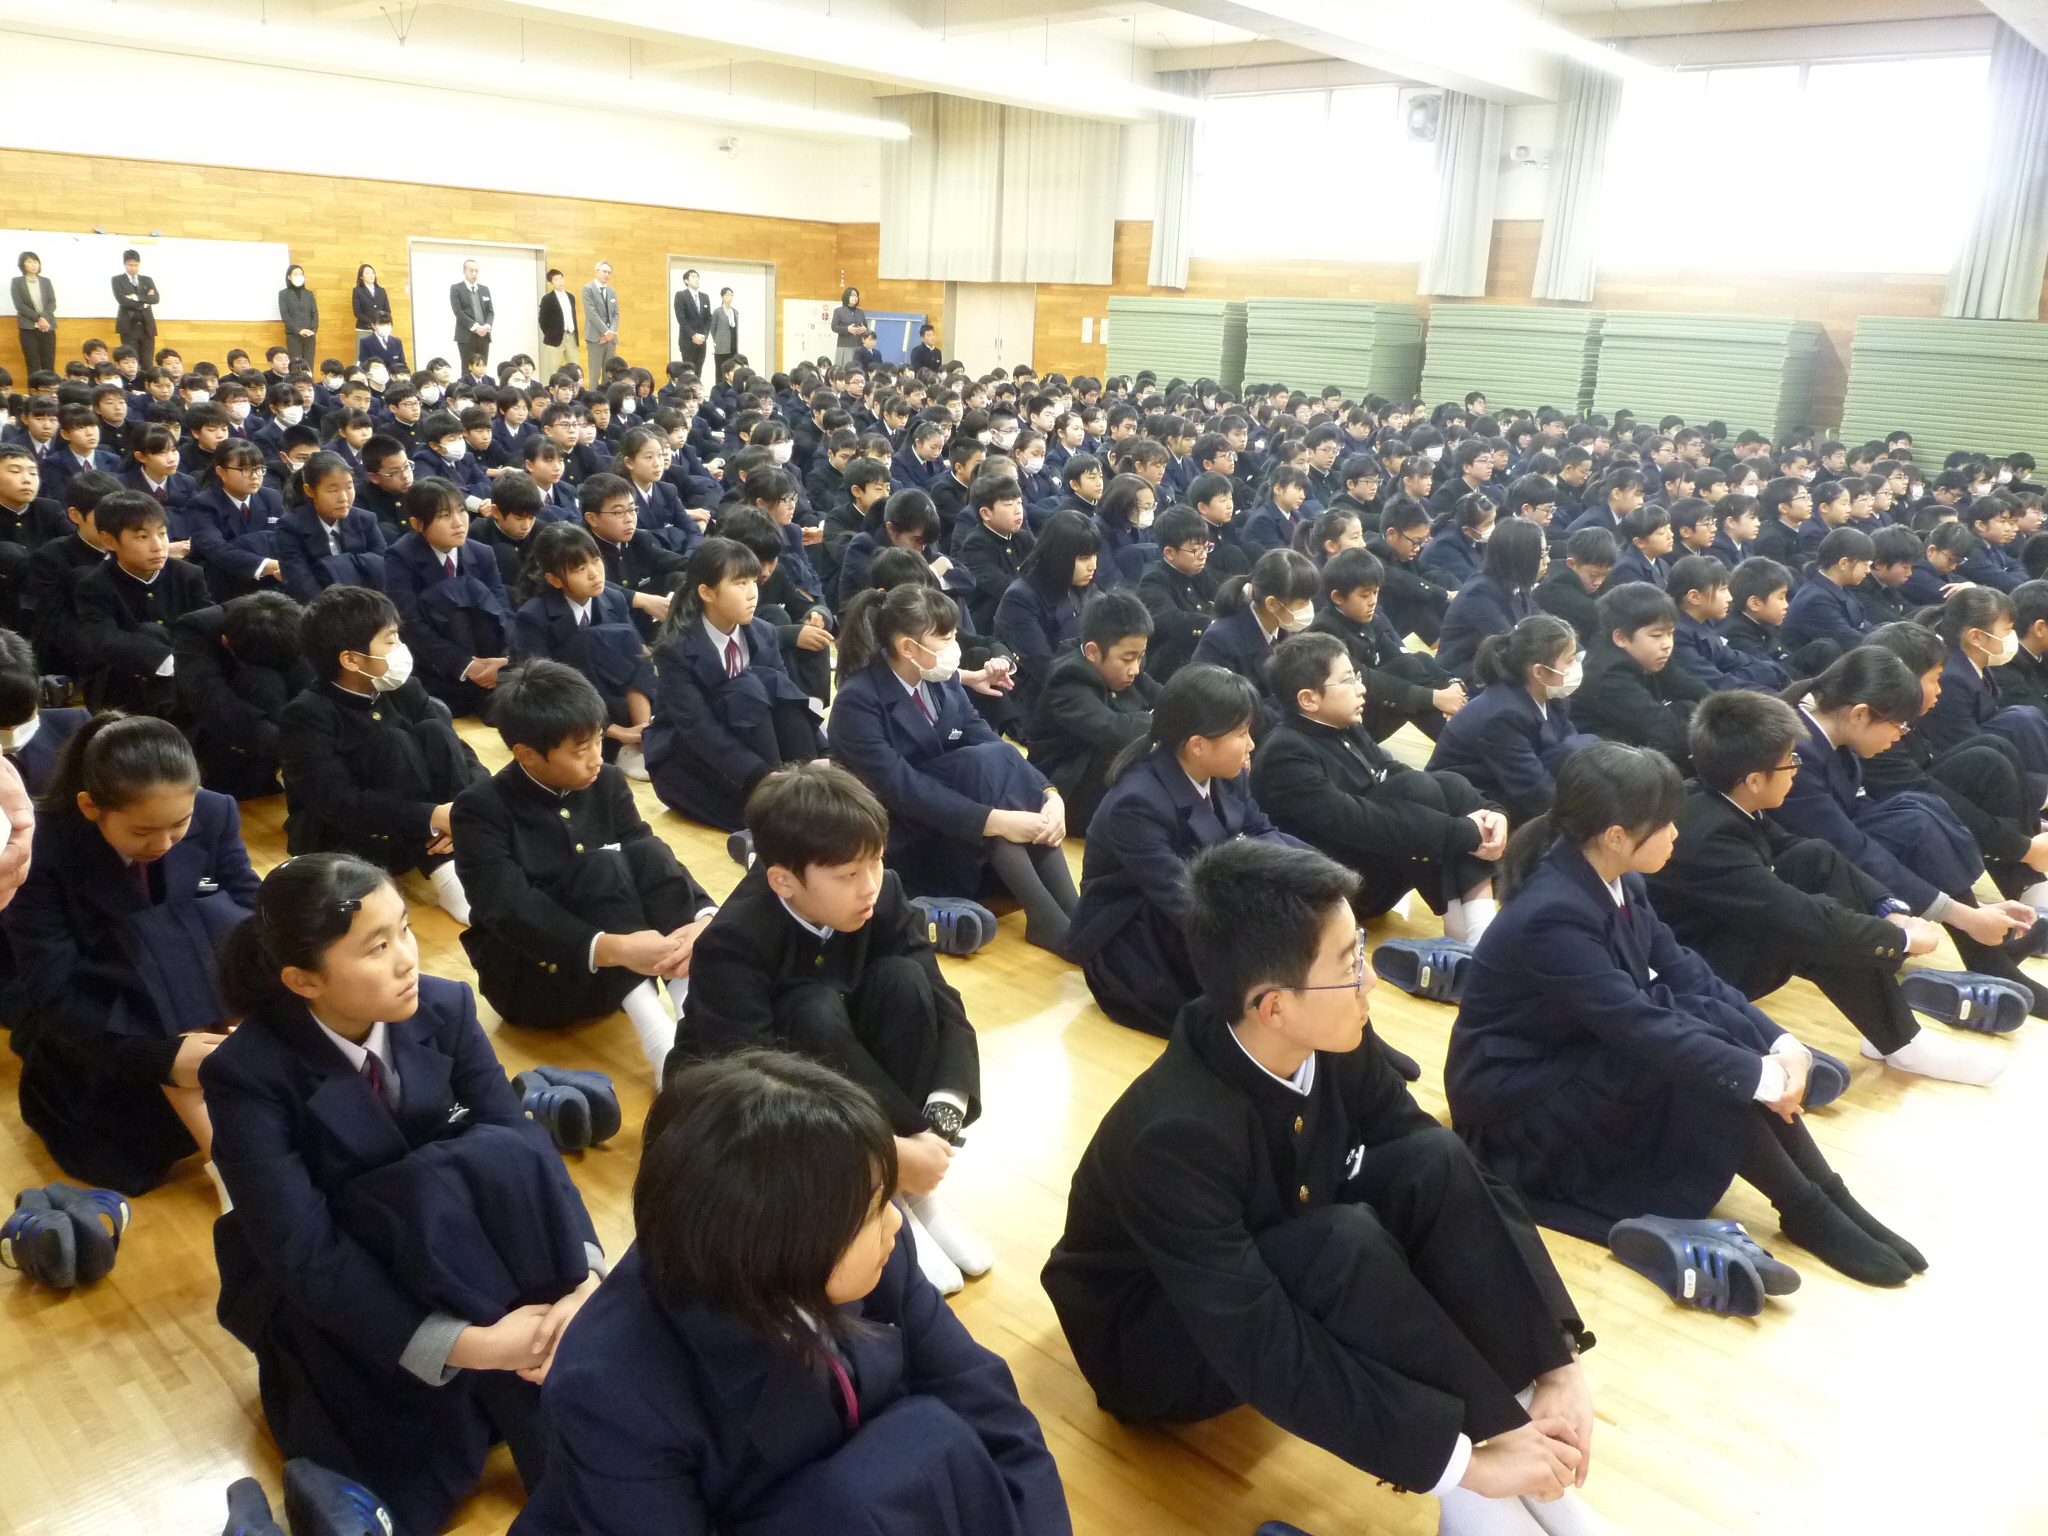 全校集会を行いました 鳥取大学附属中学校ホームページ